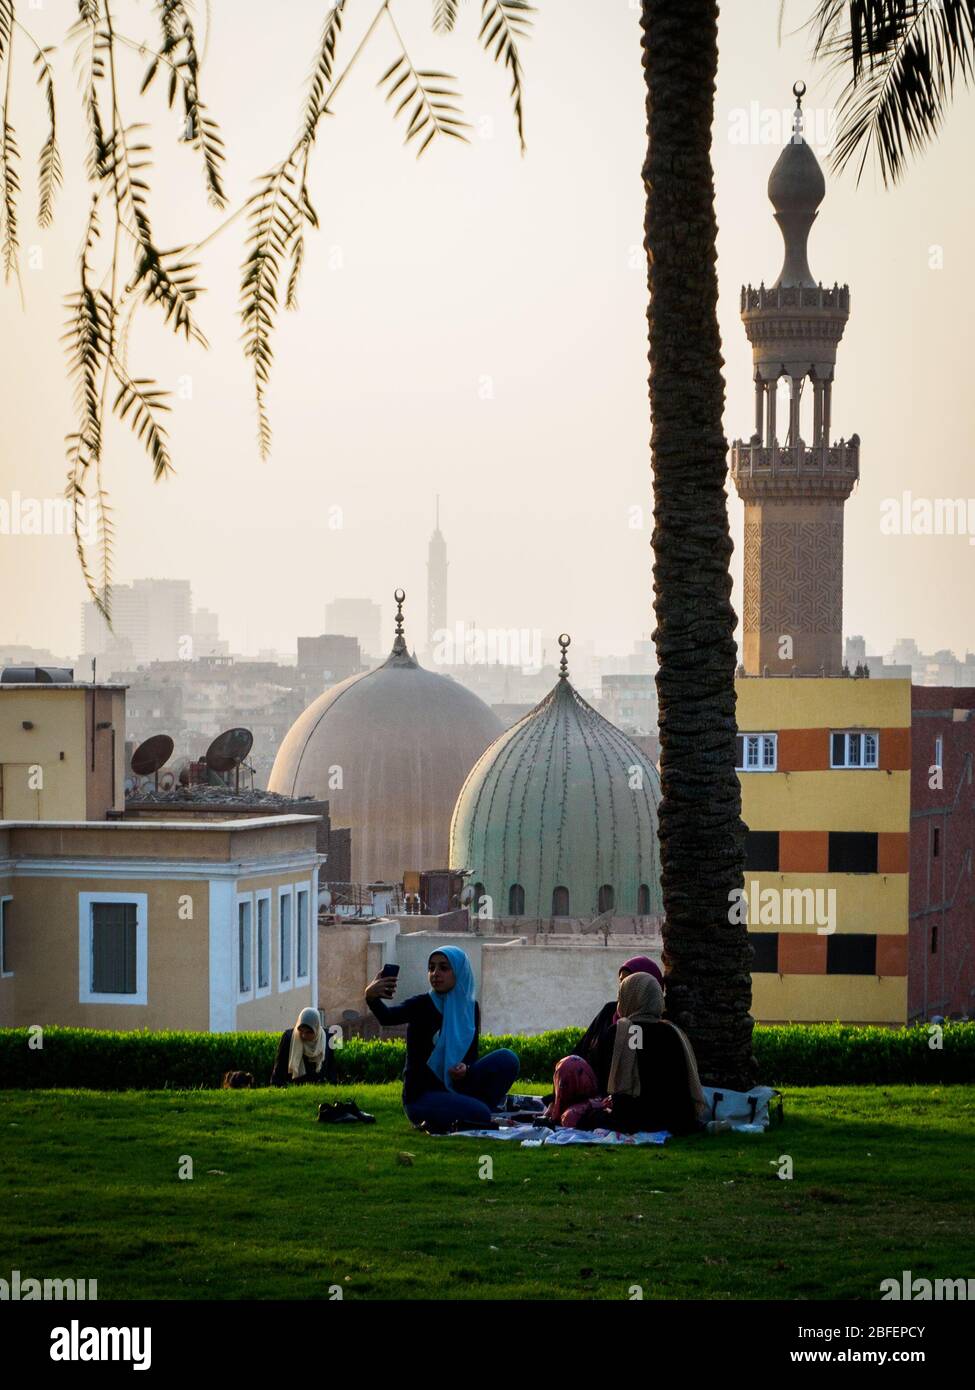 Al Azhar Park, Cairo, Egitto, 2019 ottobre, tre ragazze sedute su una coperta nel parco con lo skyline del Cairo sullo sfondo Foto Stock